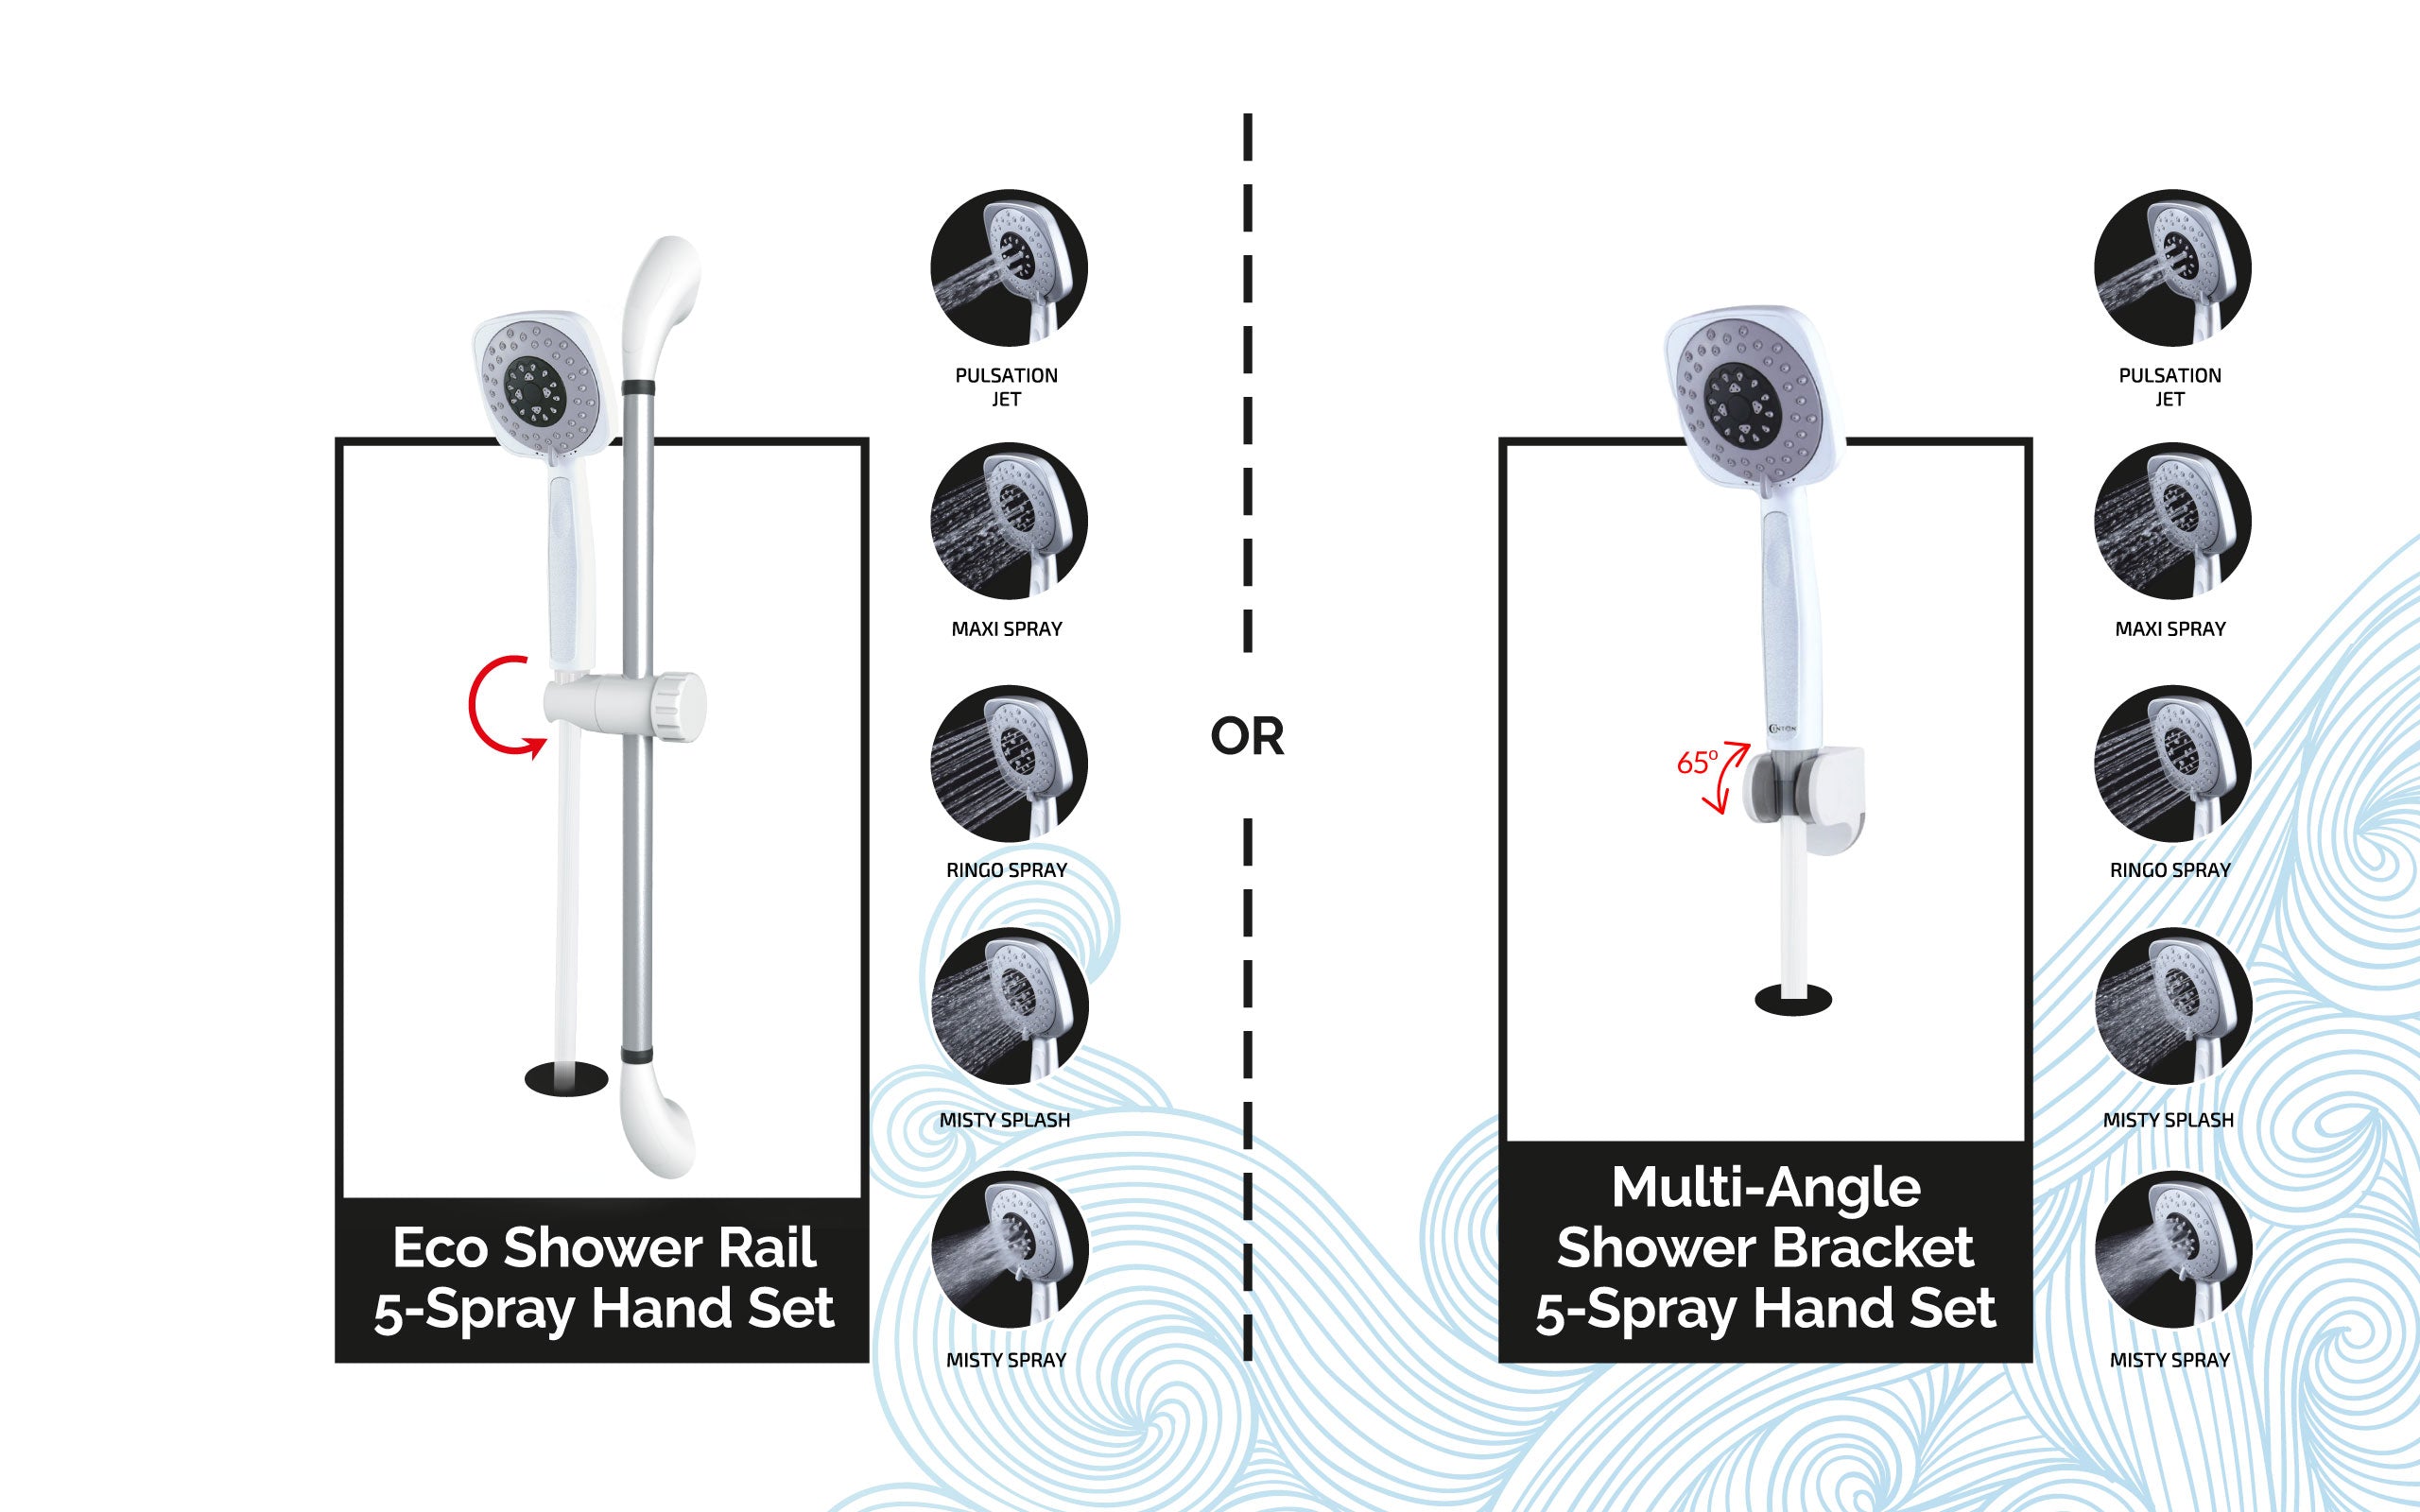 CENTON Shower Accessories - Shower Bracket or Shower Rail | OnsenMY